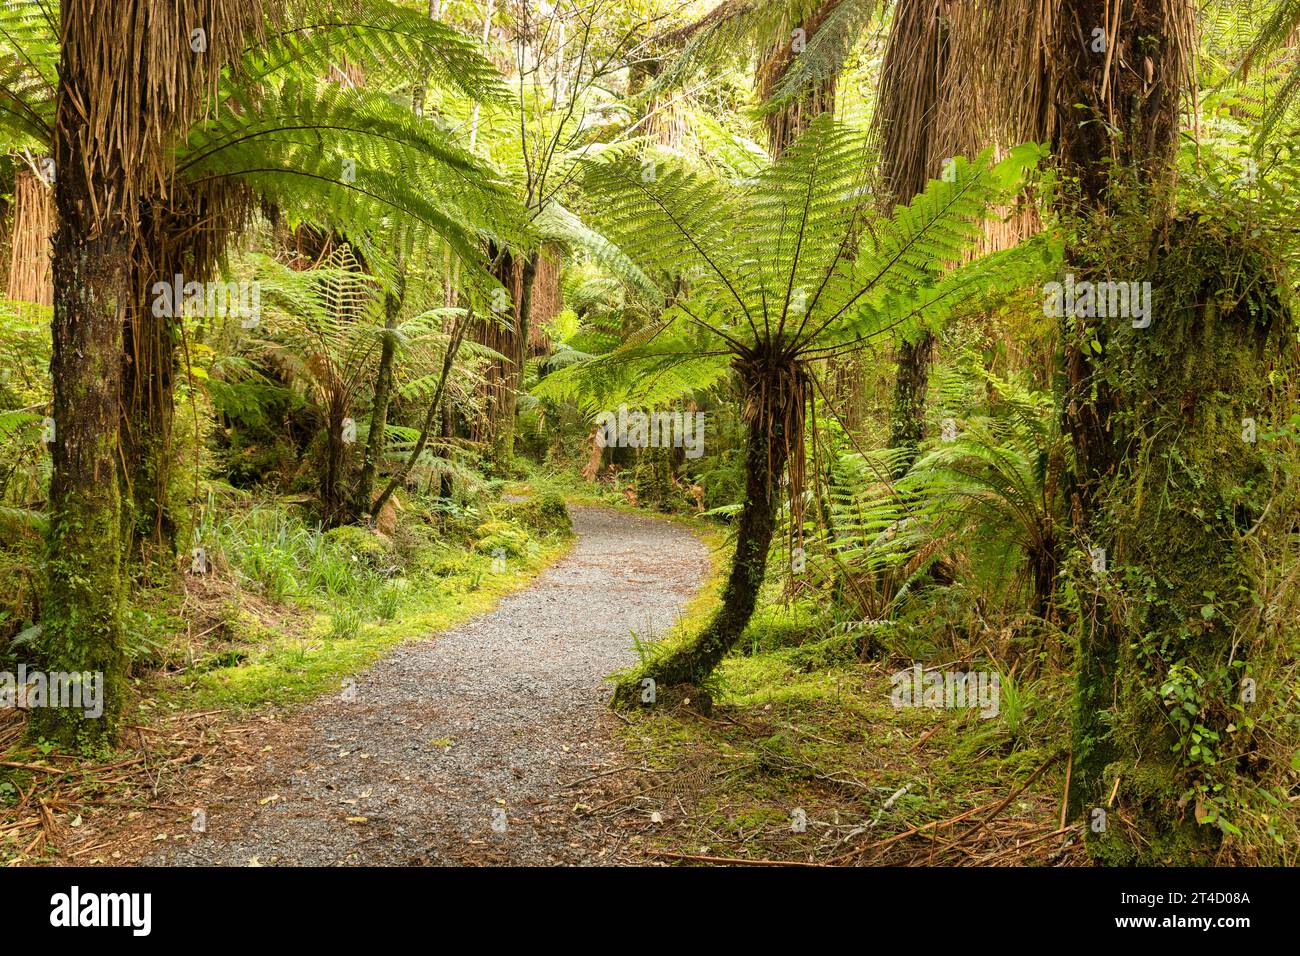 Le felci degli alberi costeggiano questo percorso attraverso il Bush nativo sulla costa occidentale dell'Isola del Sud, nuova Zelanda, vicino alle cascate Roaring Billy. Foto Stock